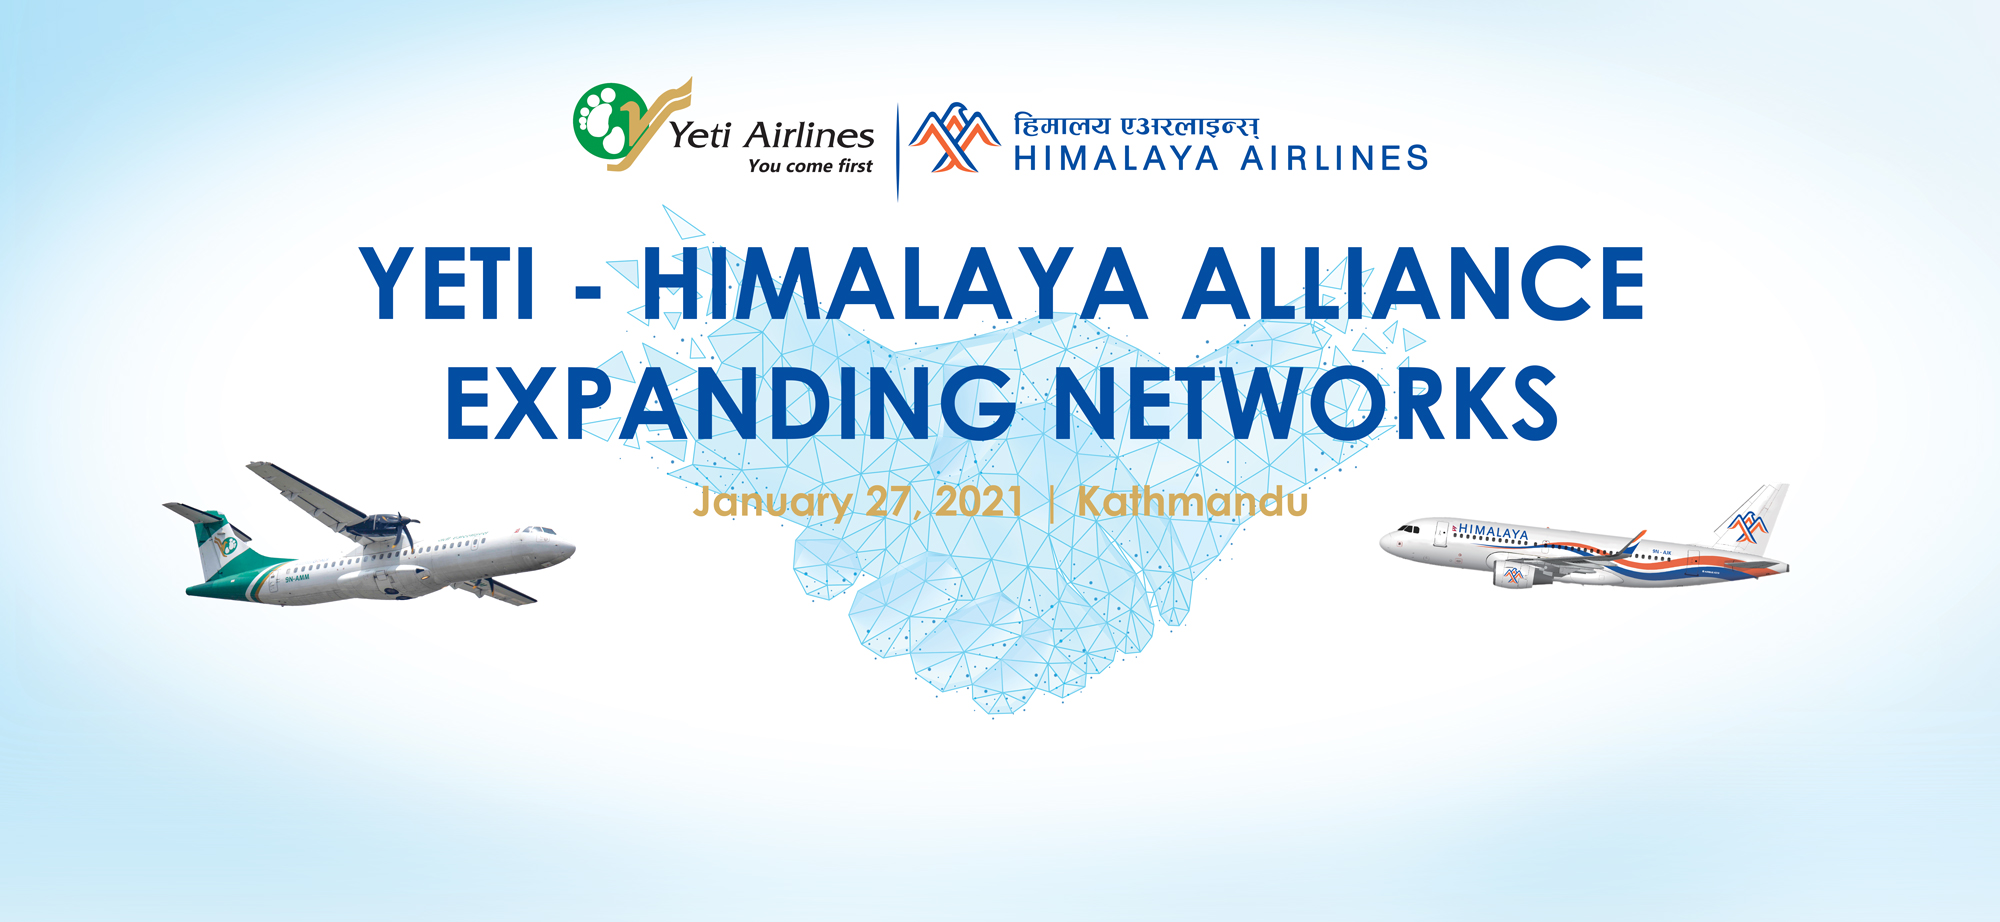 हिमालय एयरलाइन्स र यती एयरलाइन्सबीच व्यावसायिक सहकार्य